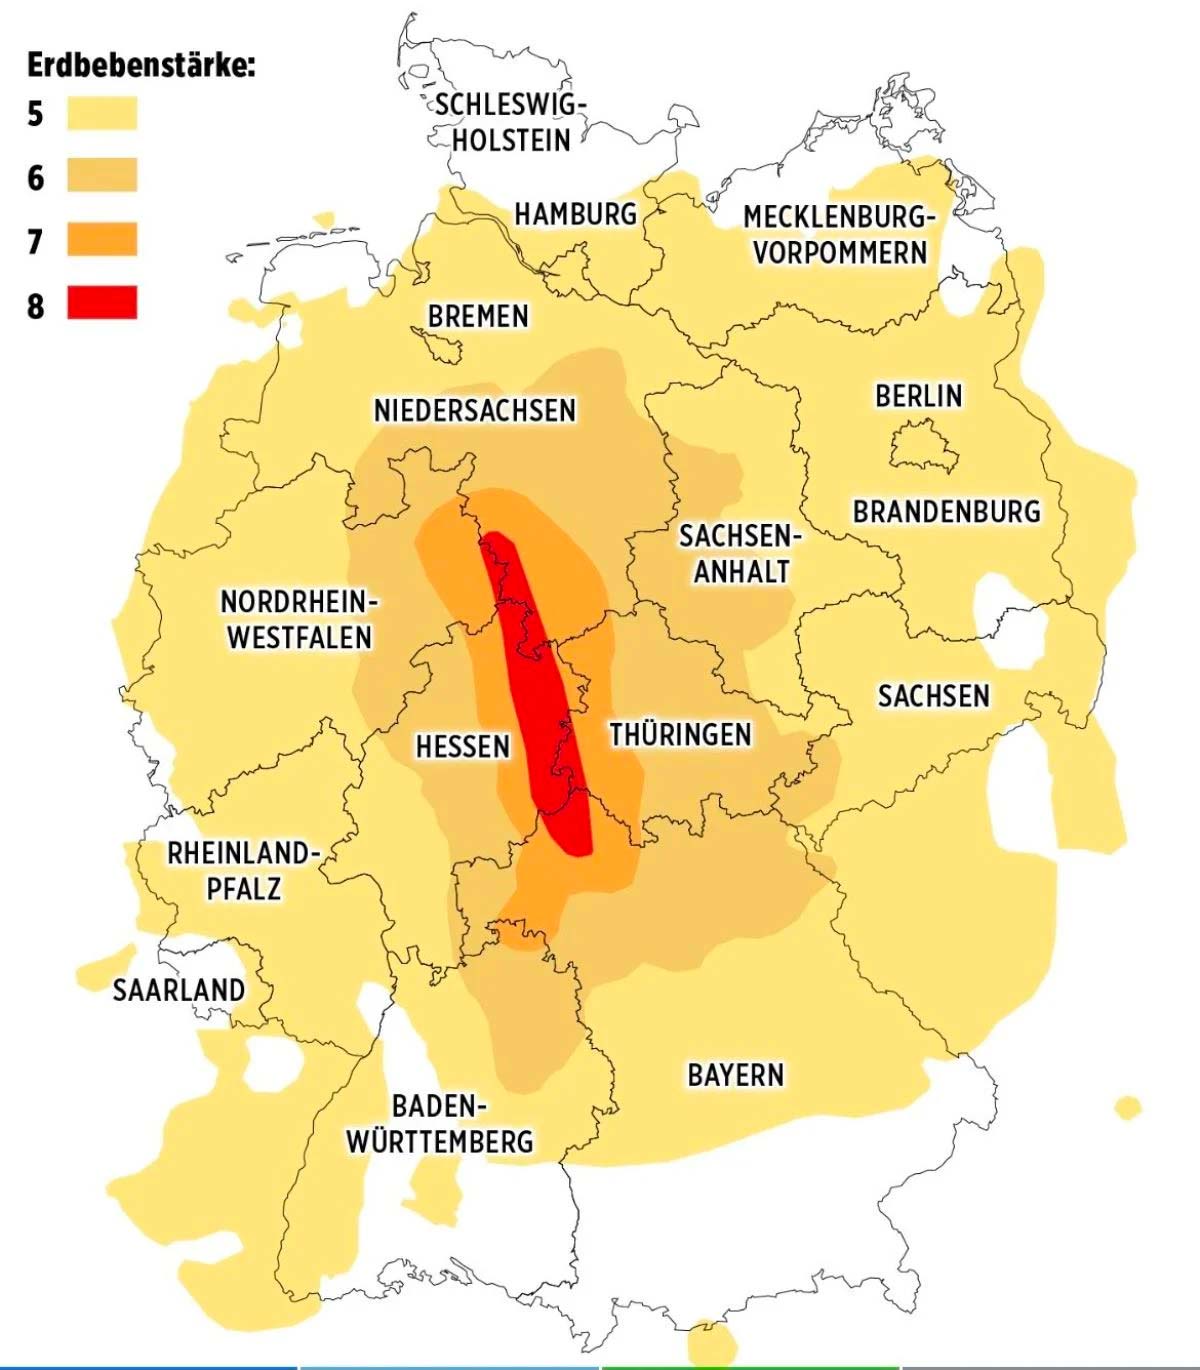 Alman medya kuruluşu Bild, depremin etki haritasını Almanya'ya uyarladı: "Eğer..."